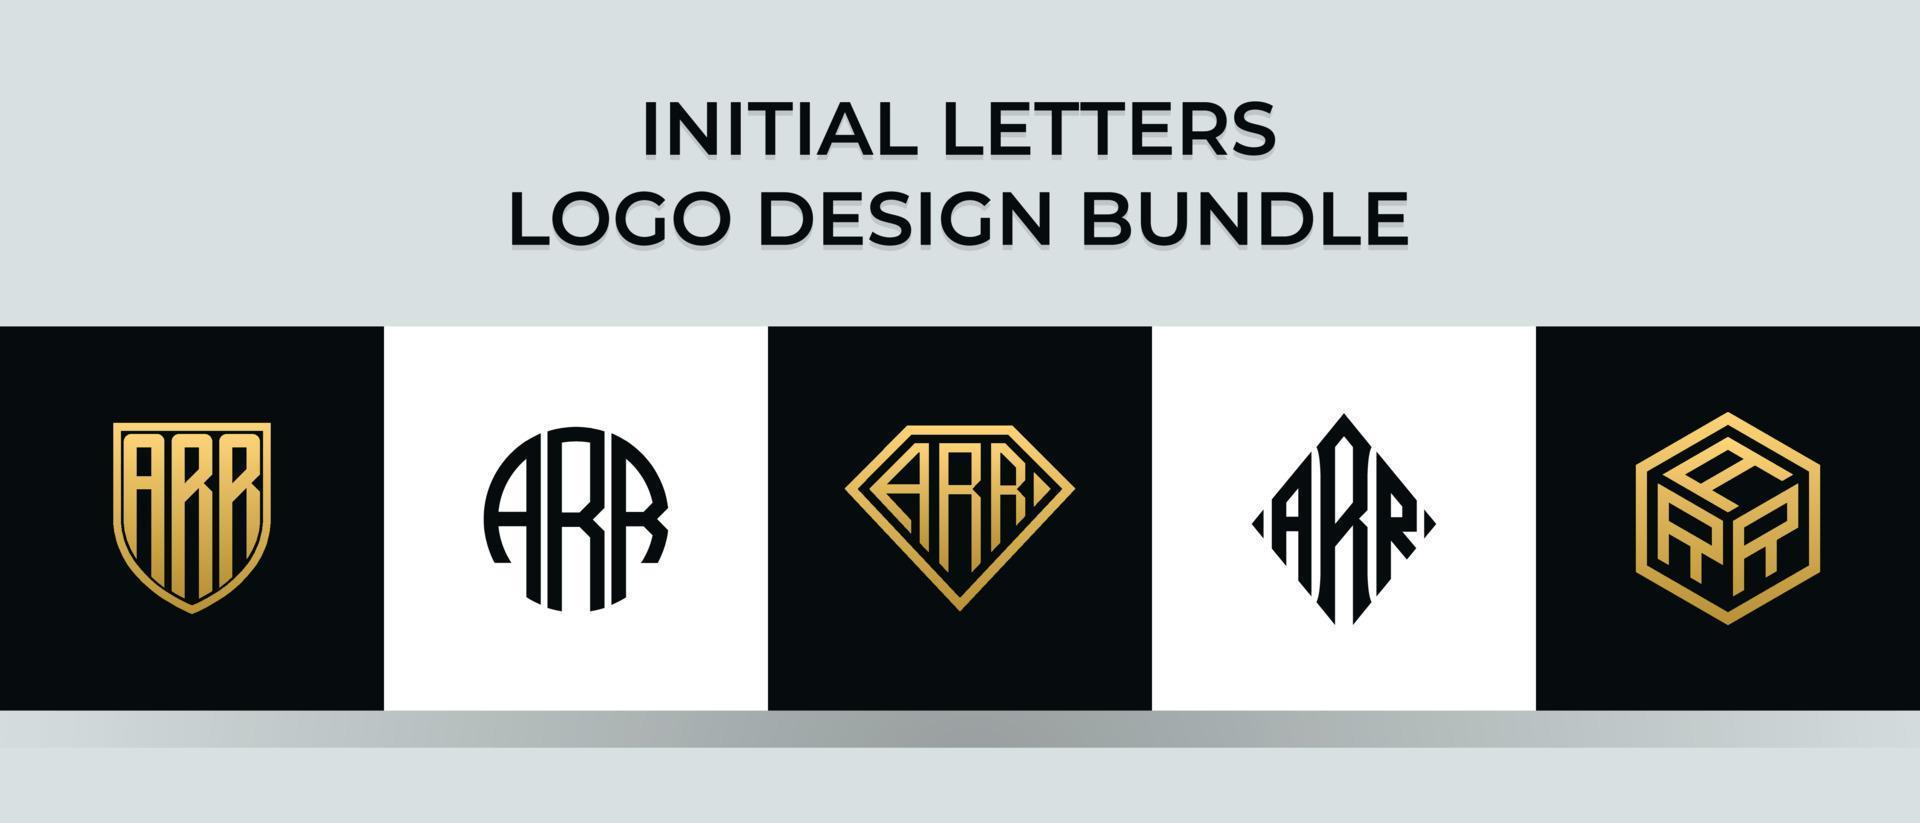 Anfangsbuchstaben arr Logo Designs Bundle vektor